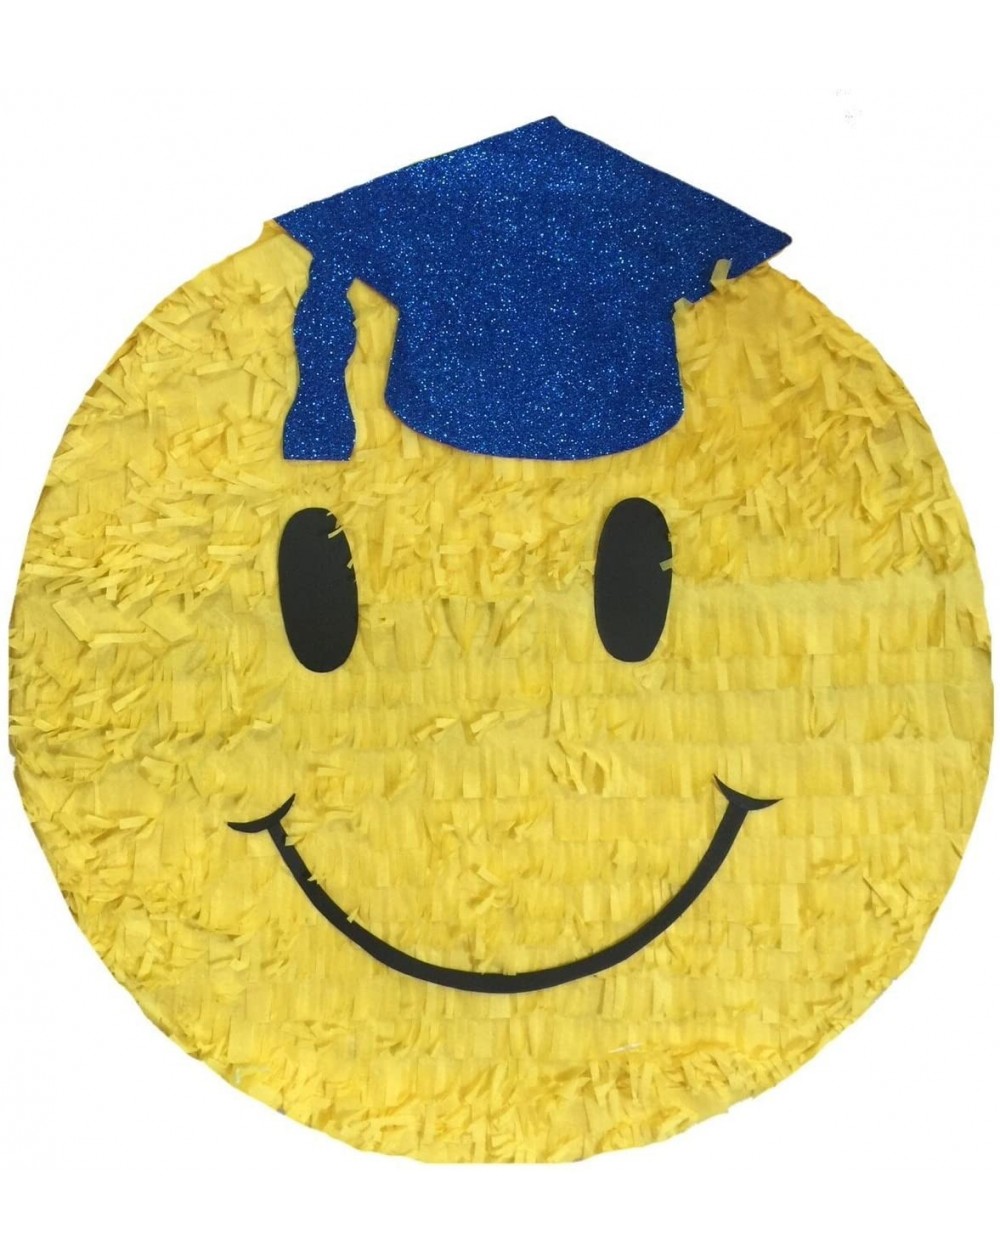 Piñatas Graduation Emoticon Pinata Blue Cap 16 - CI11YY1WHZJ $34.76